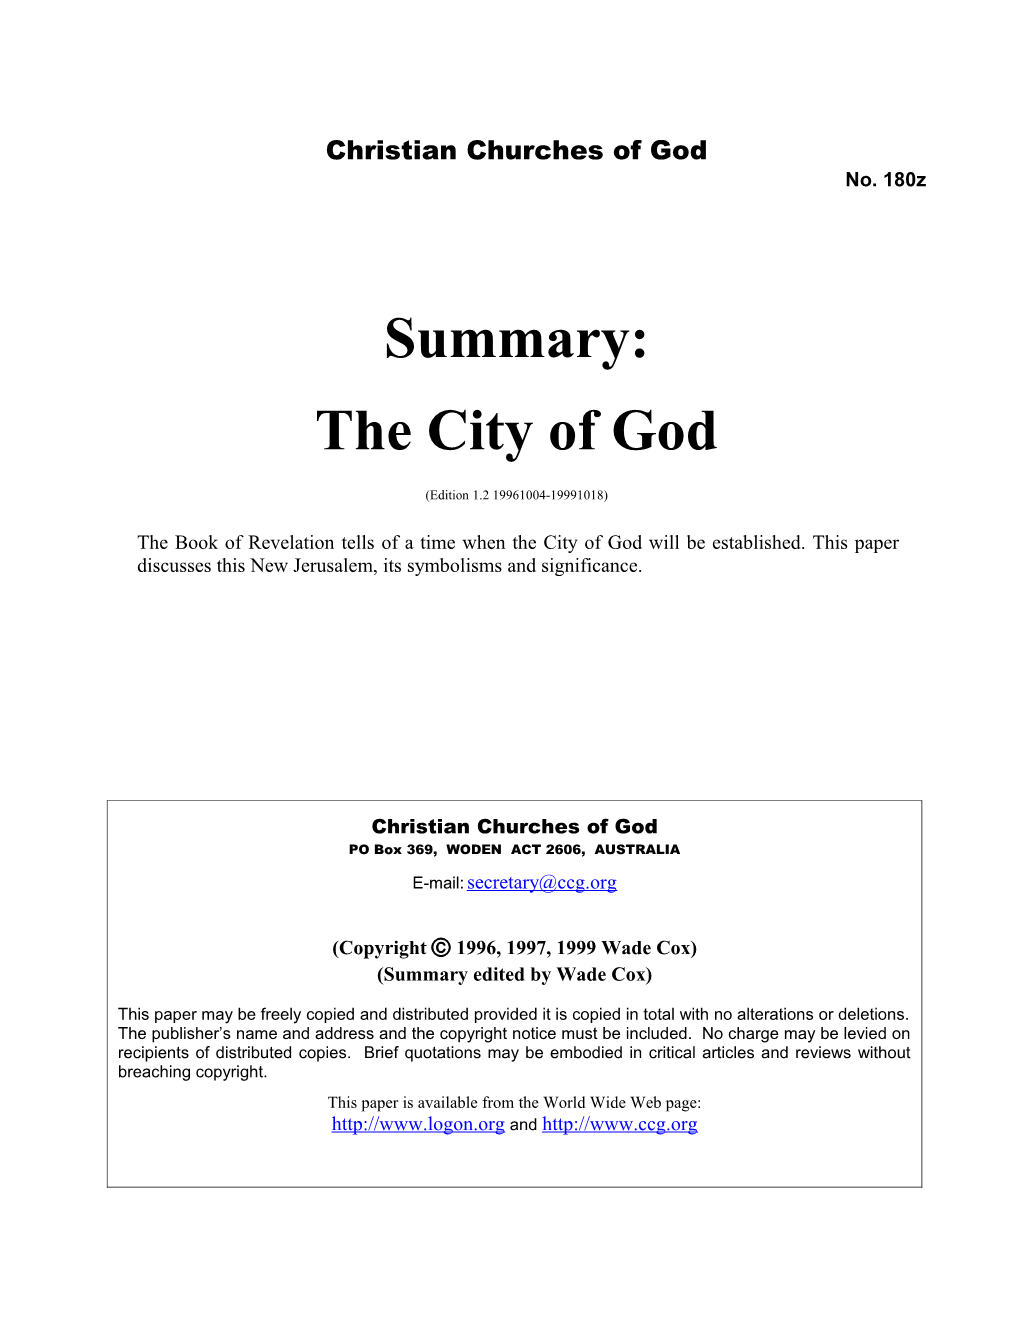 Summary: the City of God (No. 180Z)